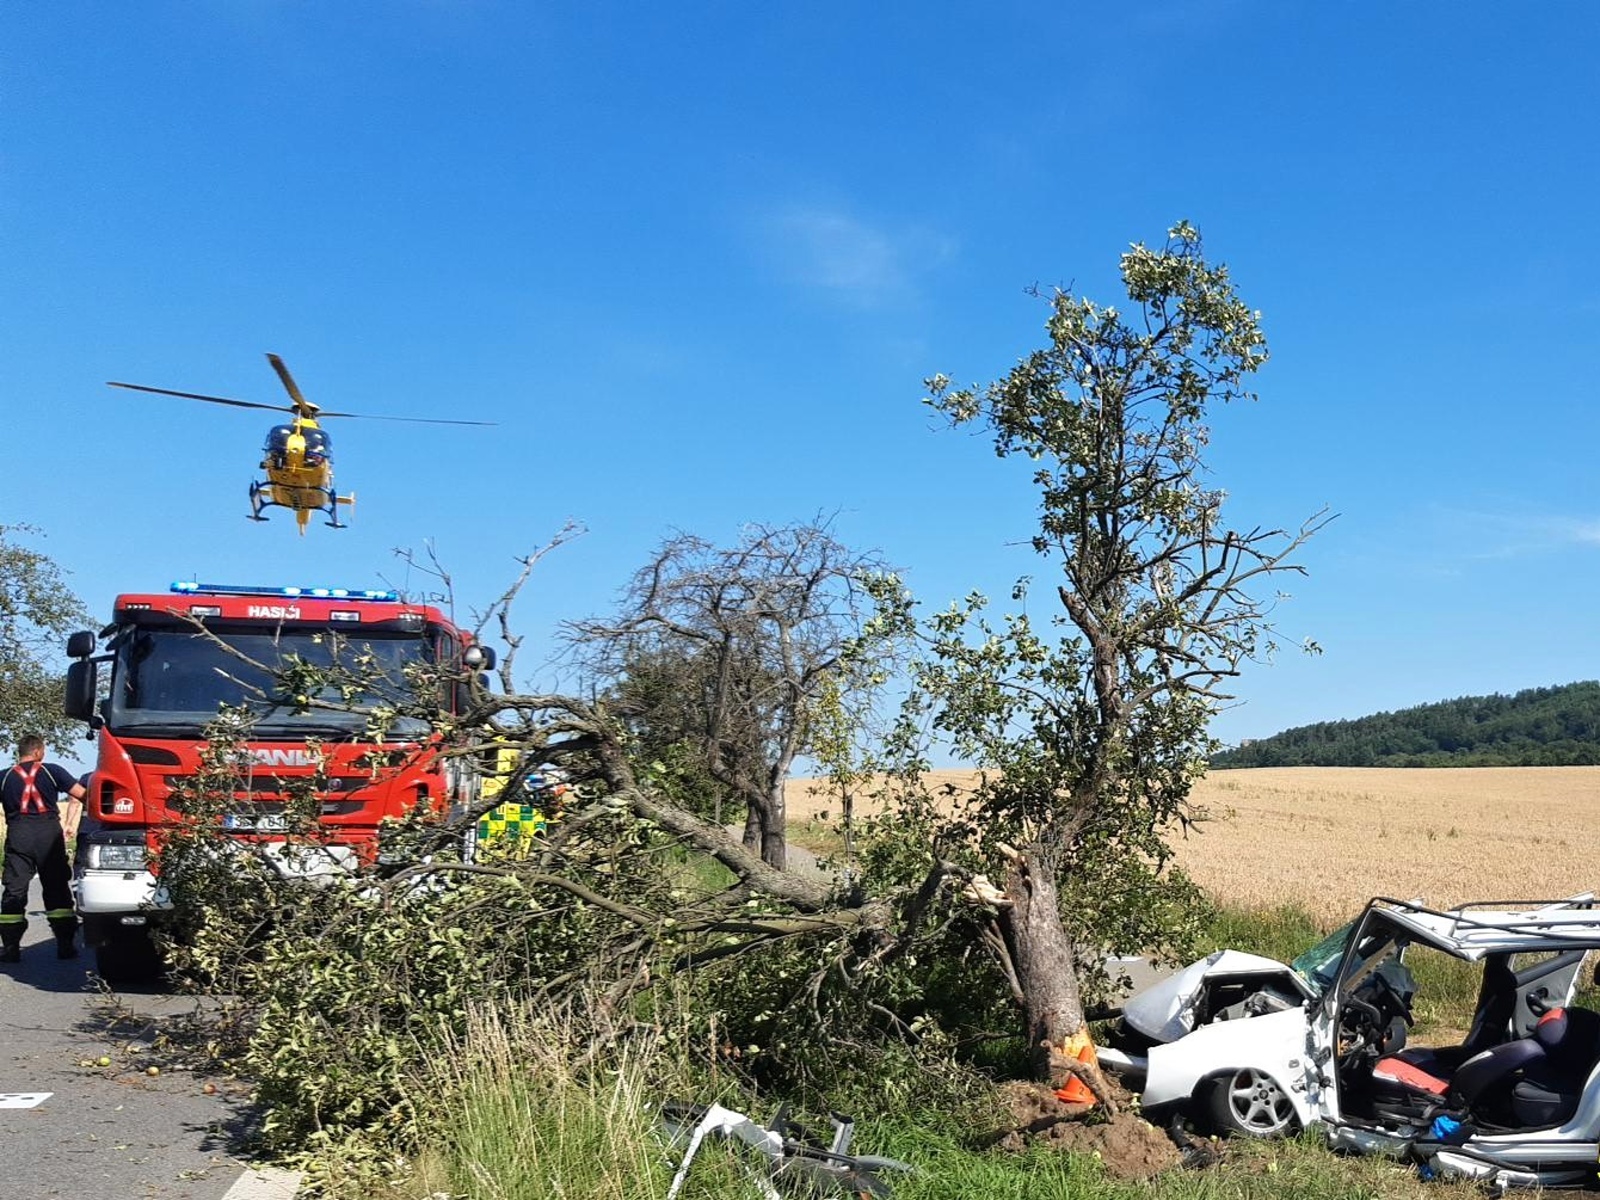 085-Havárie osobního automobilu u obce Kněžmost na Mladoboleslavsku.jpg